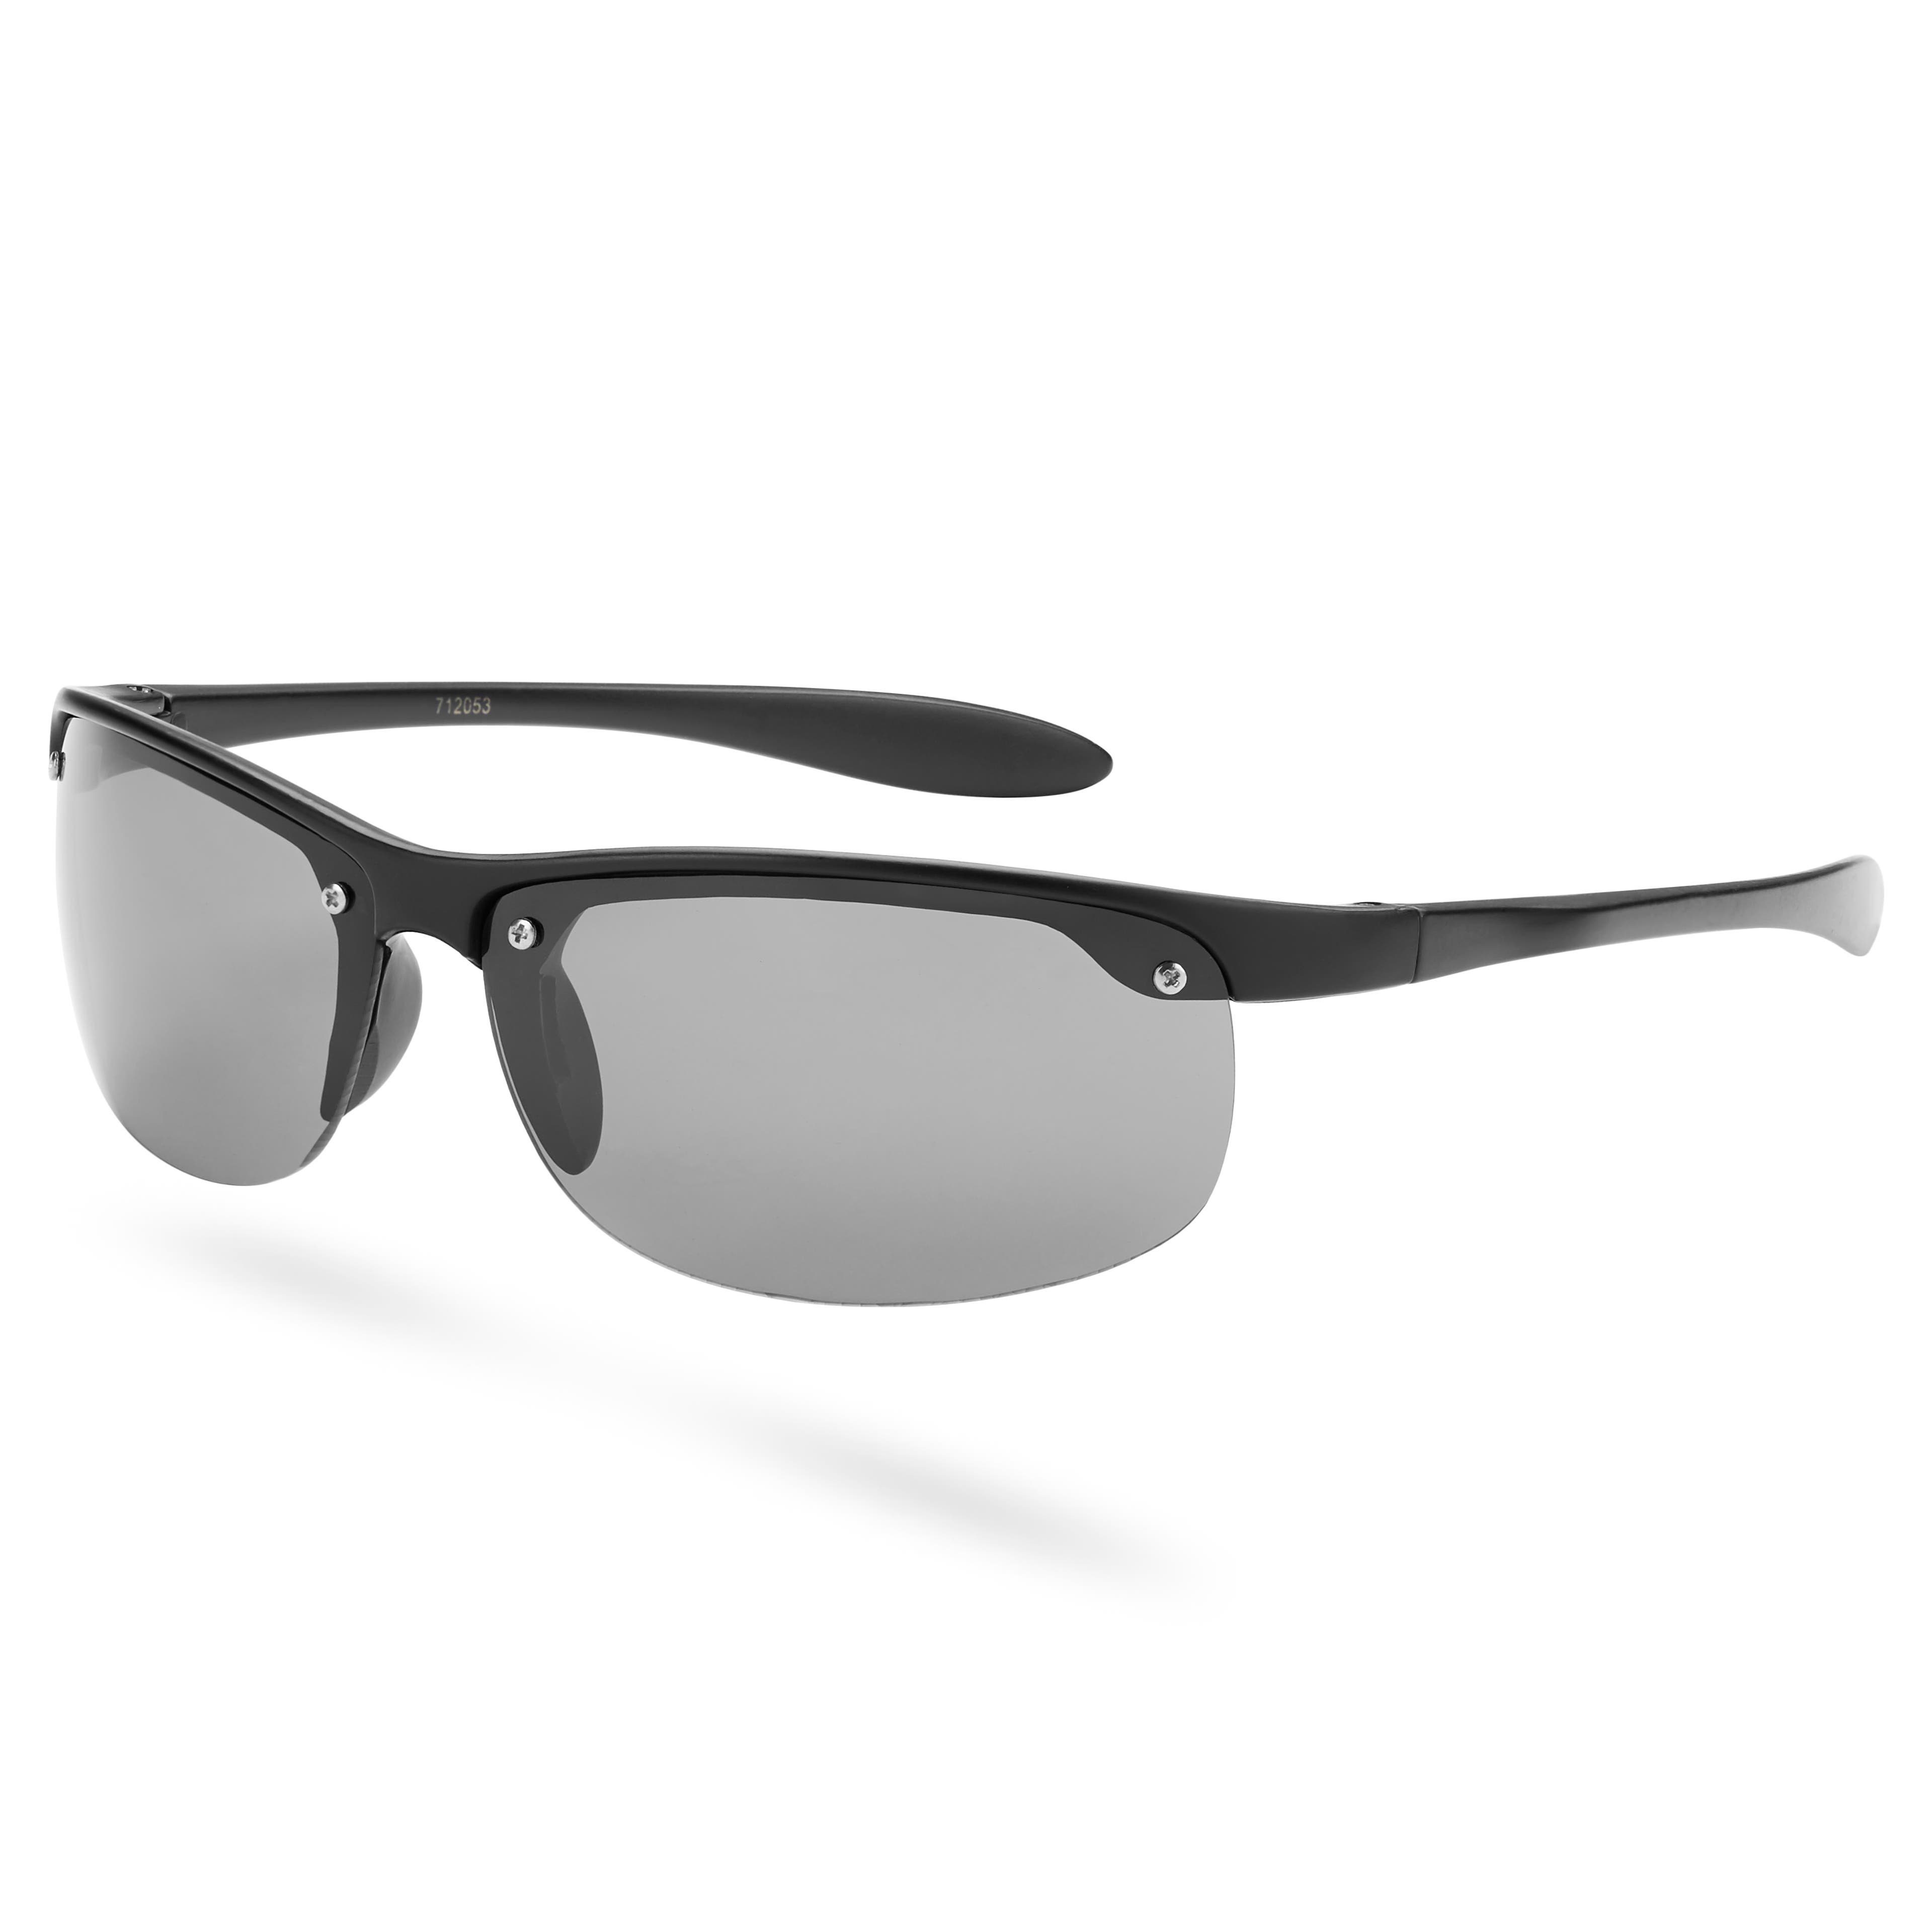 Black & Smoke Wraparound Sports Sunglasses